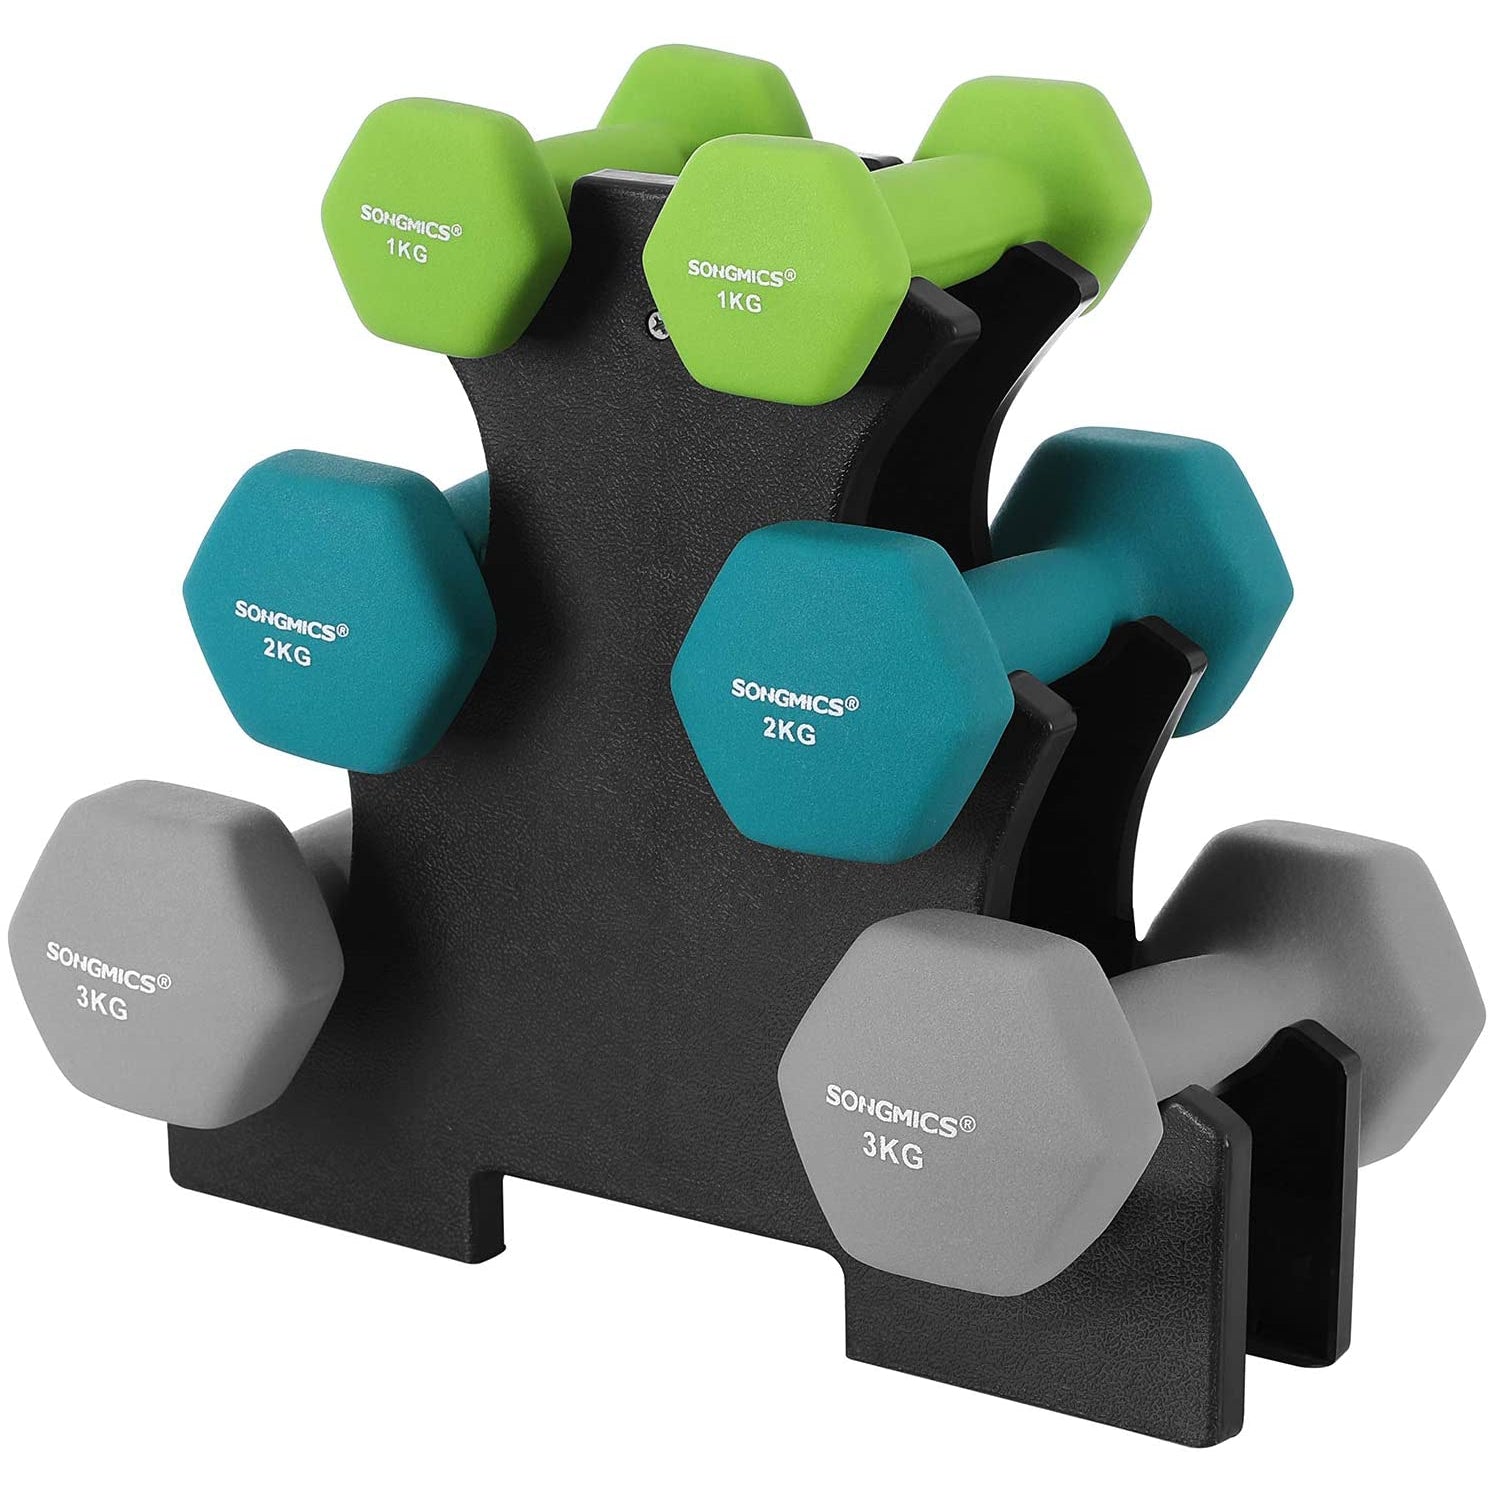 Nancy's Dumbells Set - Dumbbells - Hexagon - Dumbbell rack - 1 kg - 2 kg - 3 kg - Strength training - Lime green - Aquamarine - Light gray 